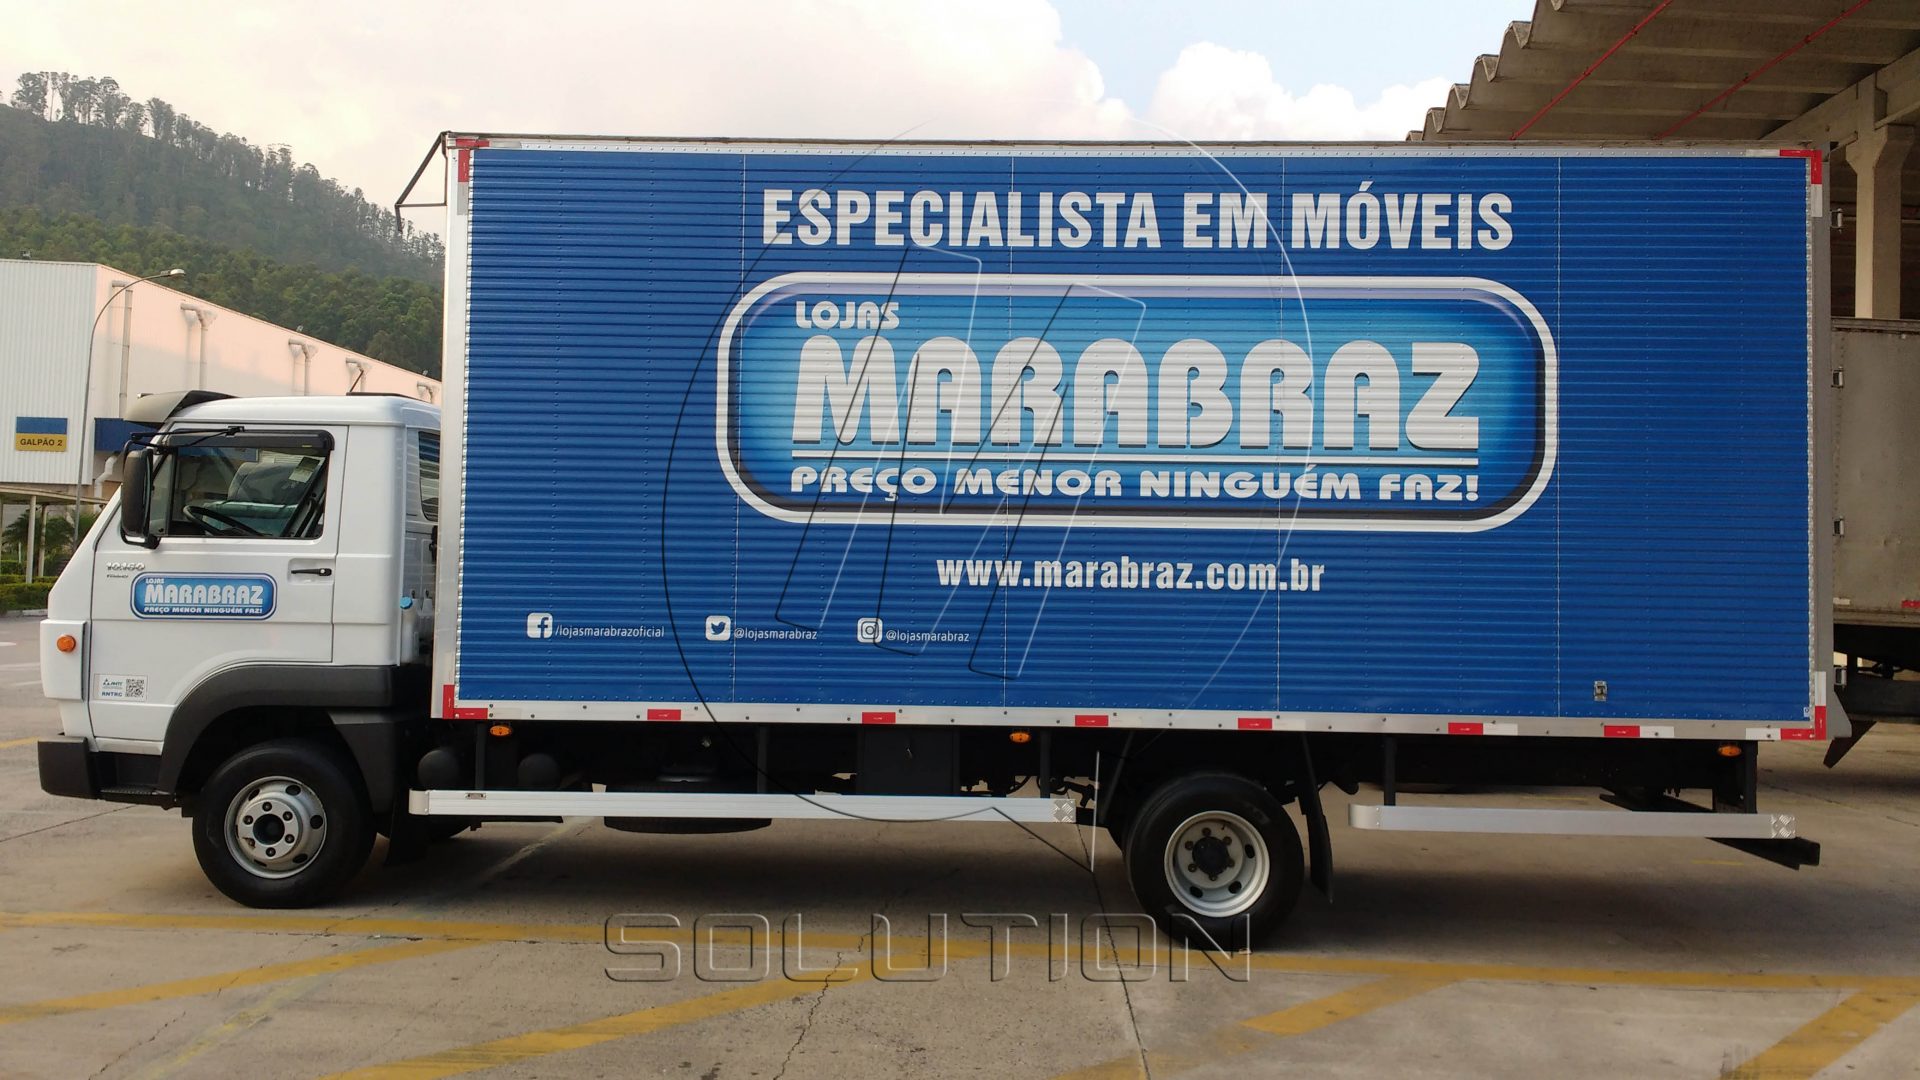 Caminhão Marabraz - Msolution